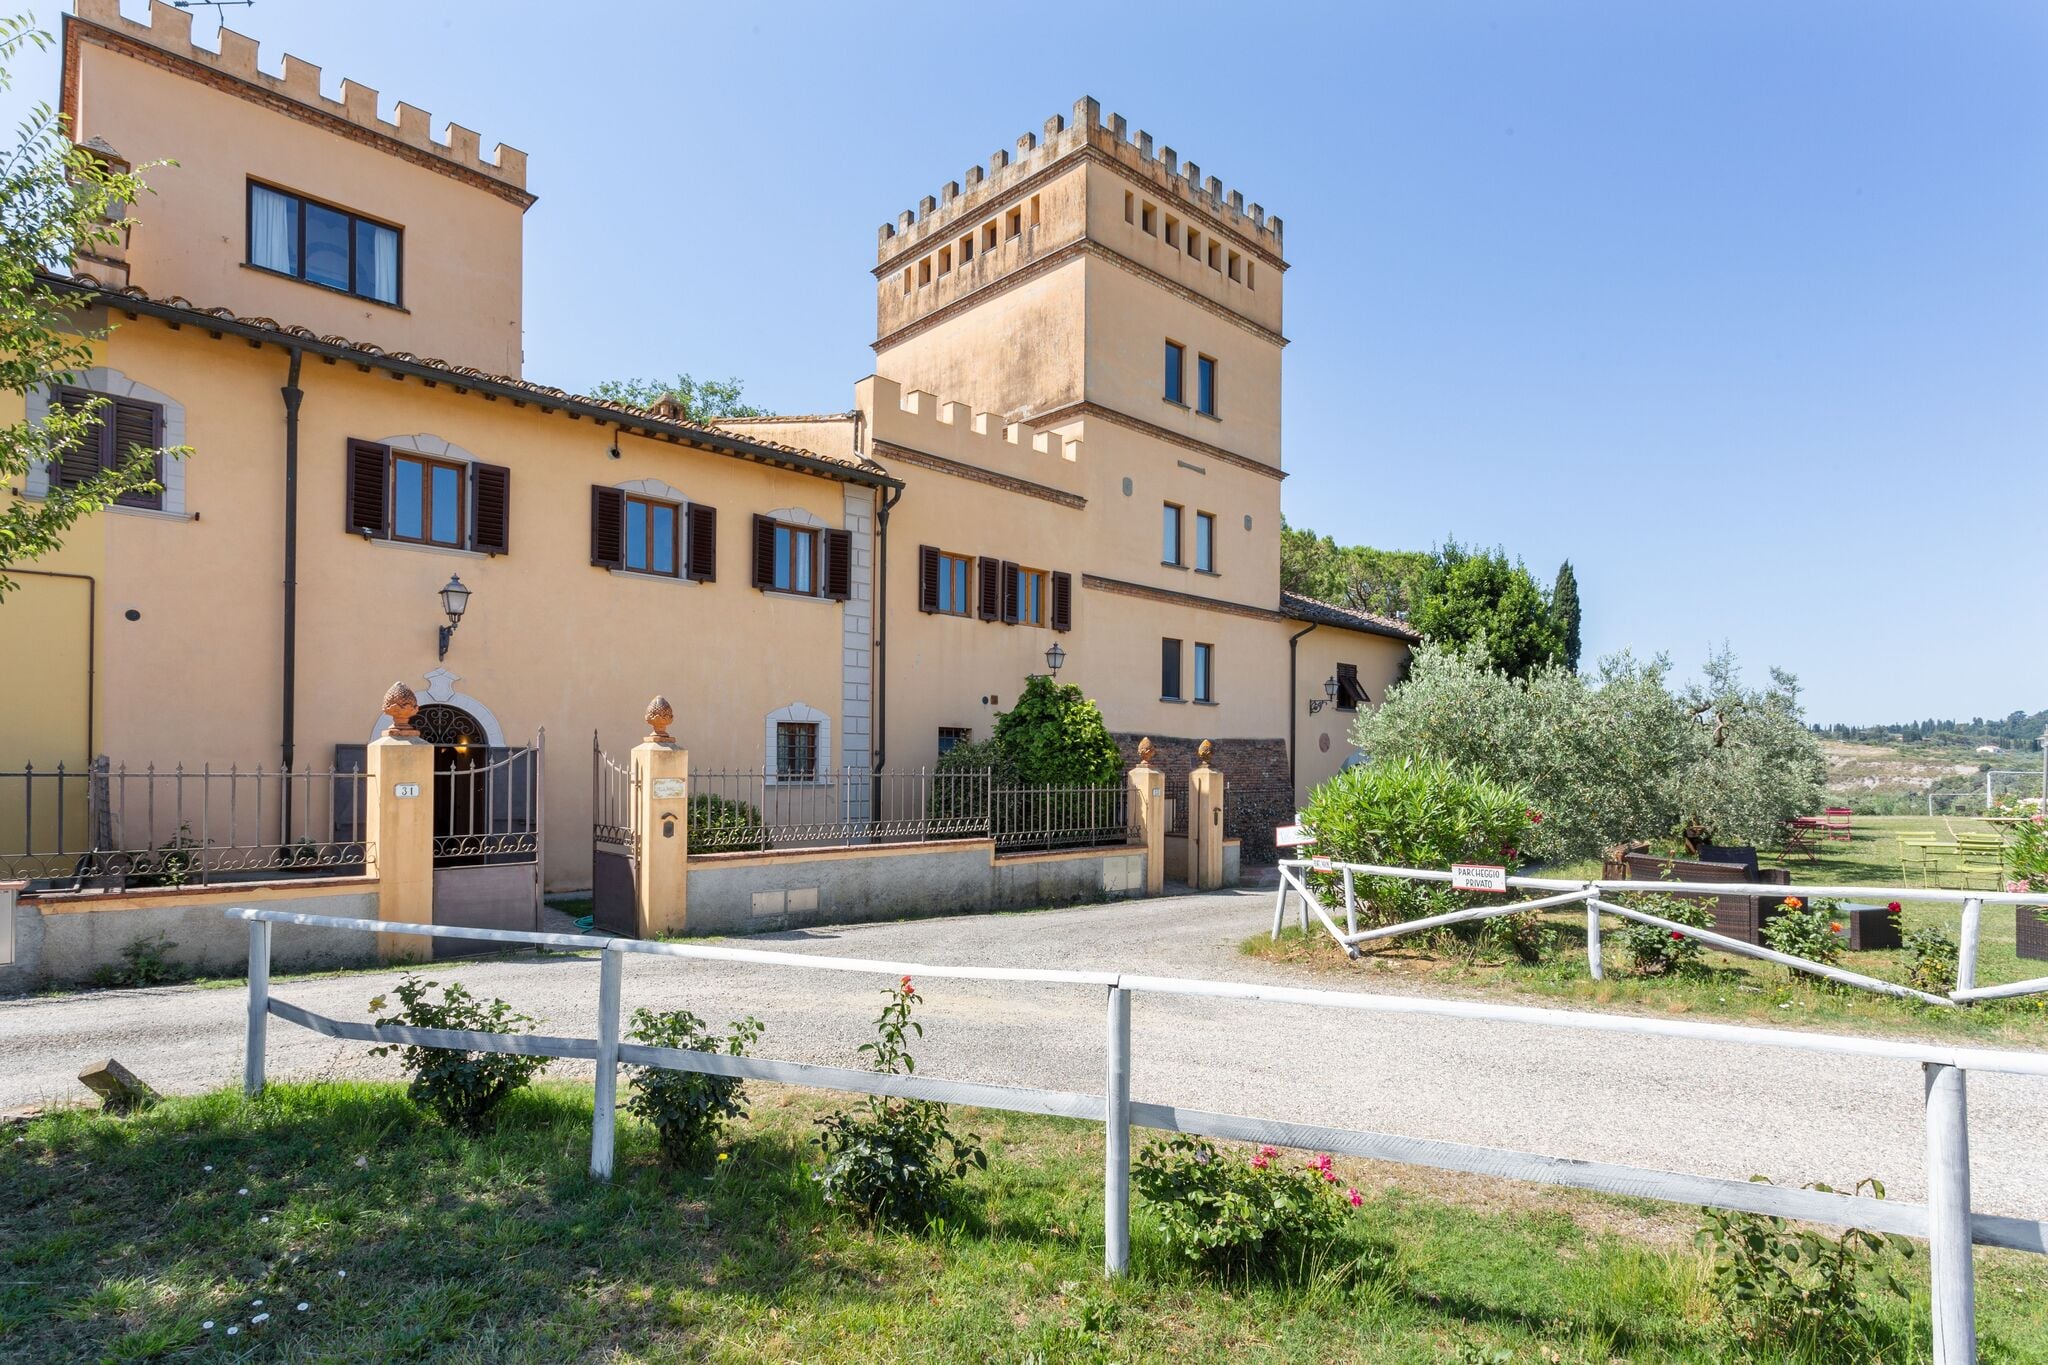 Prachtige villa in Empoli, Toscane met zwembad